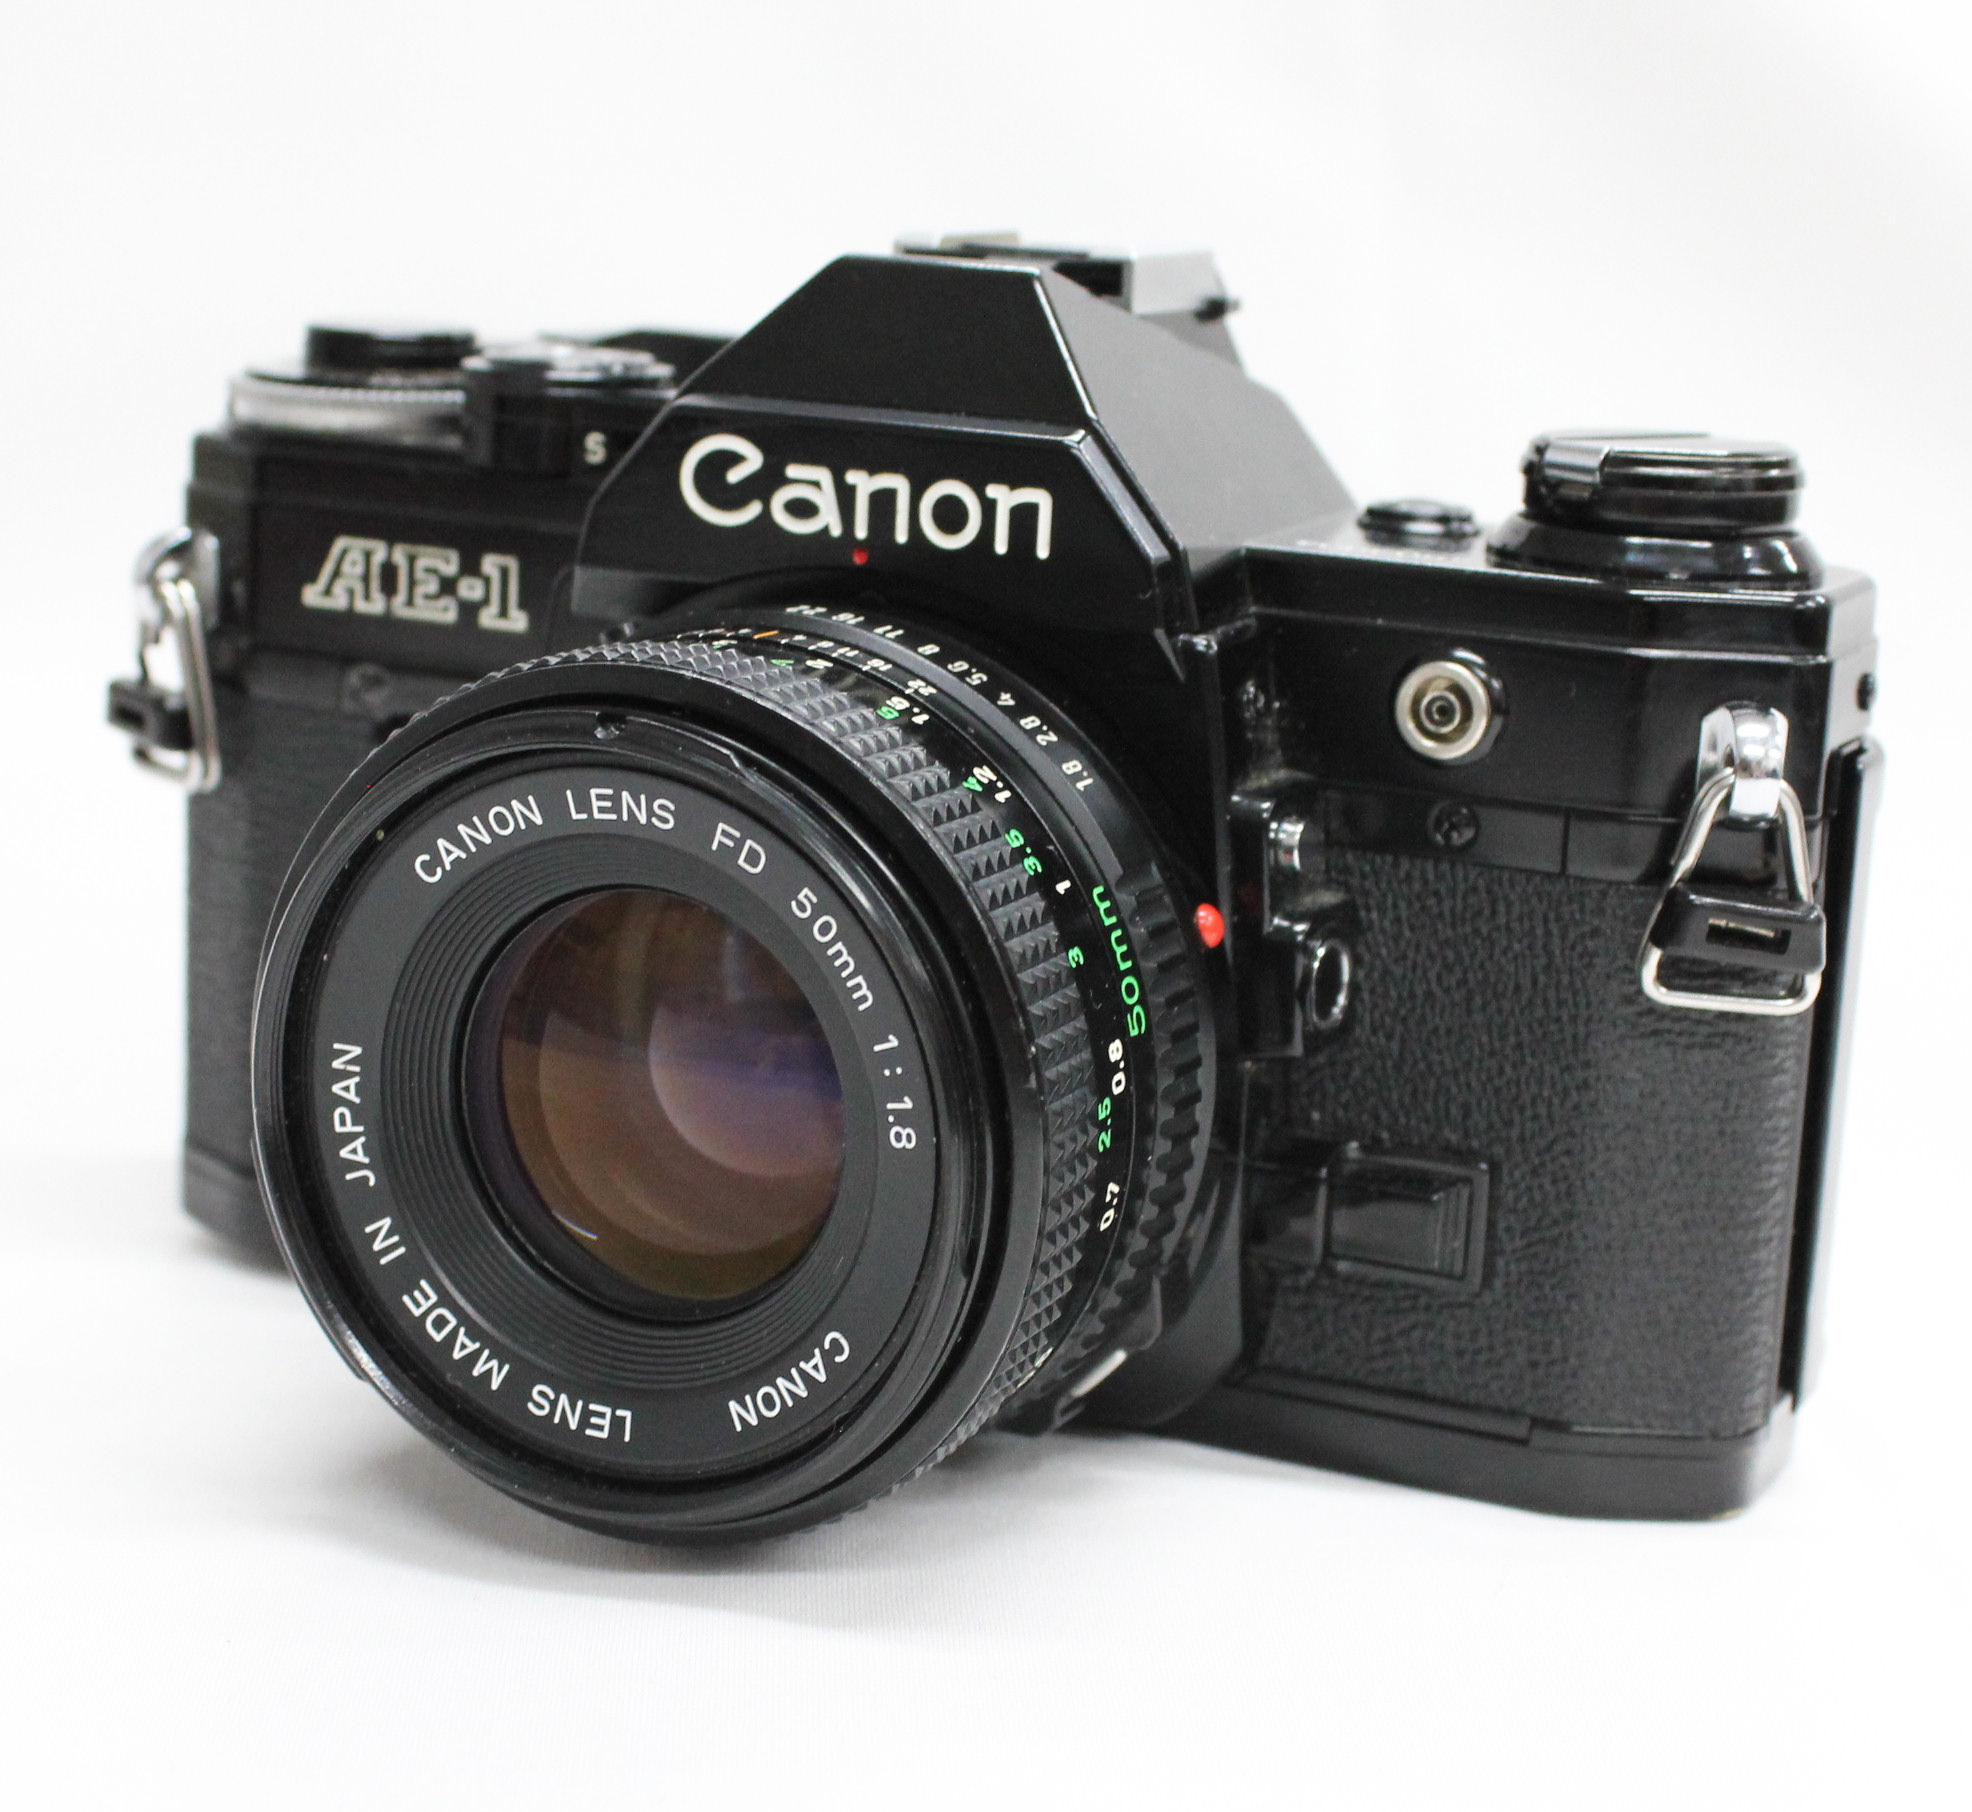 Canon AE-1 PROGRAM FD 50mm F1.4-